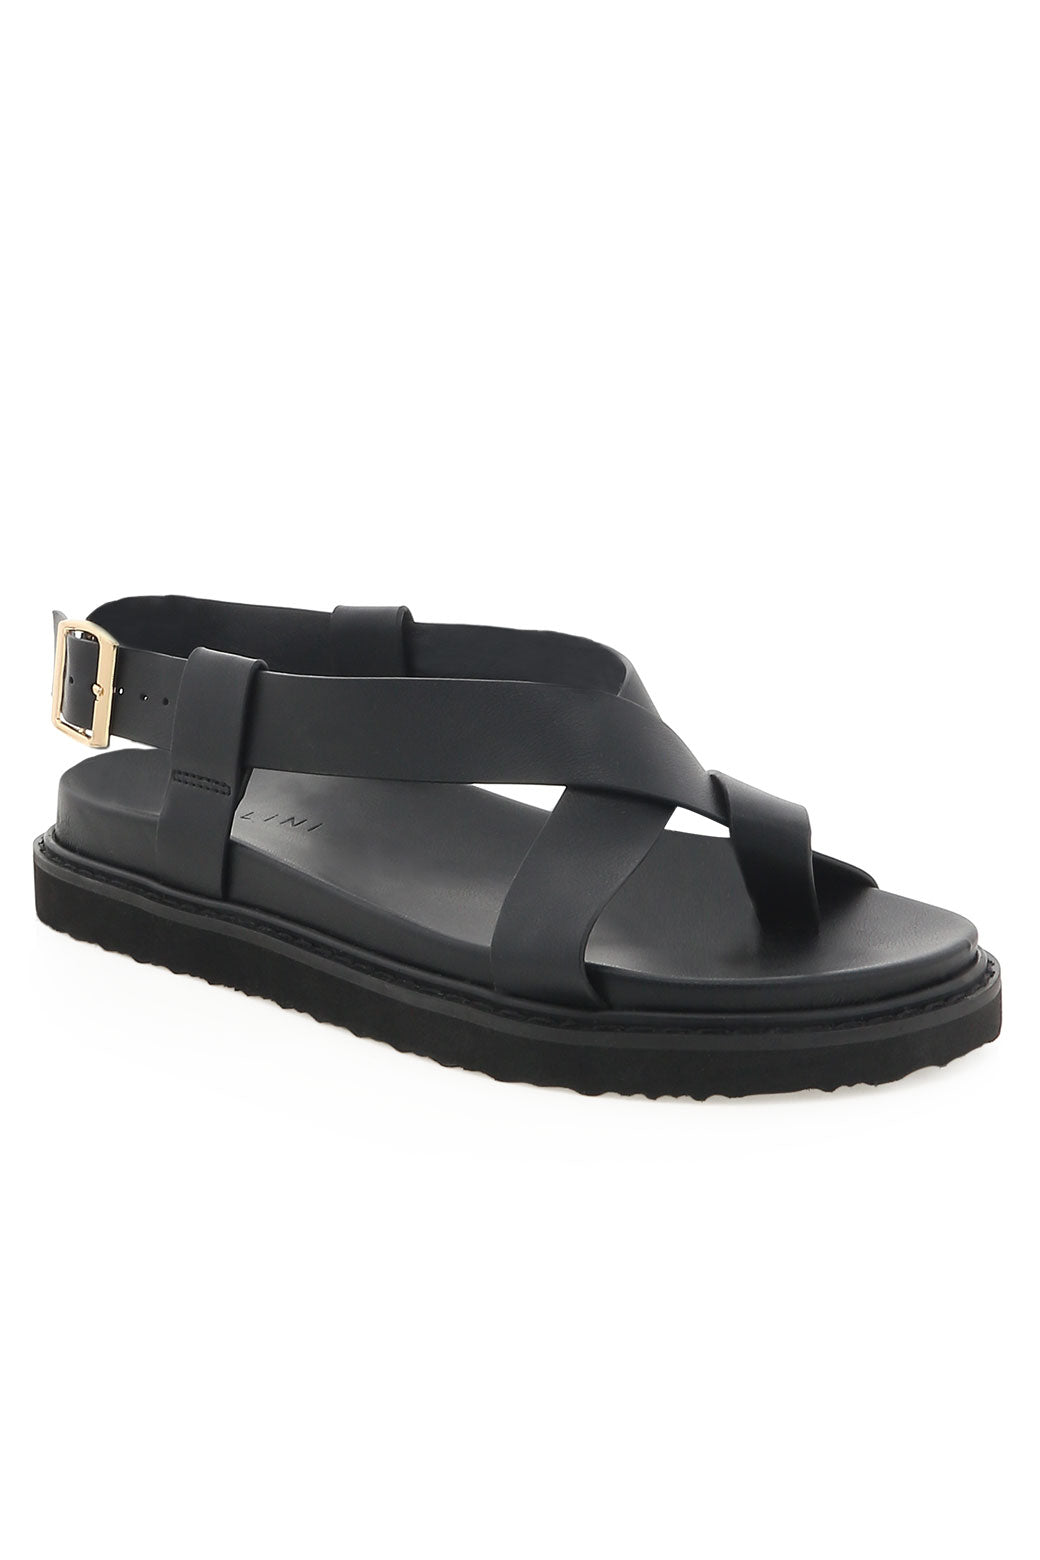 Billini Zarai Sandals Black